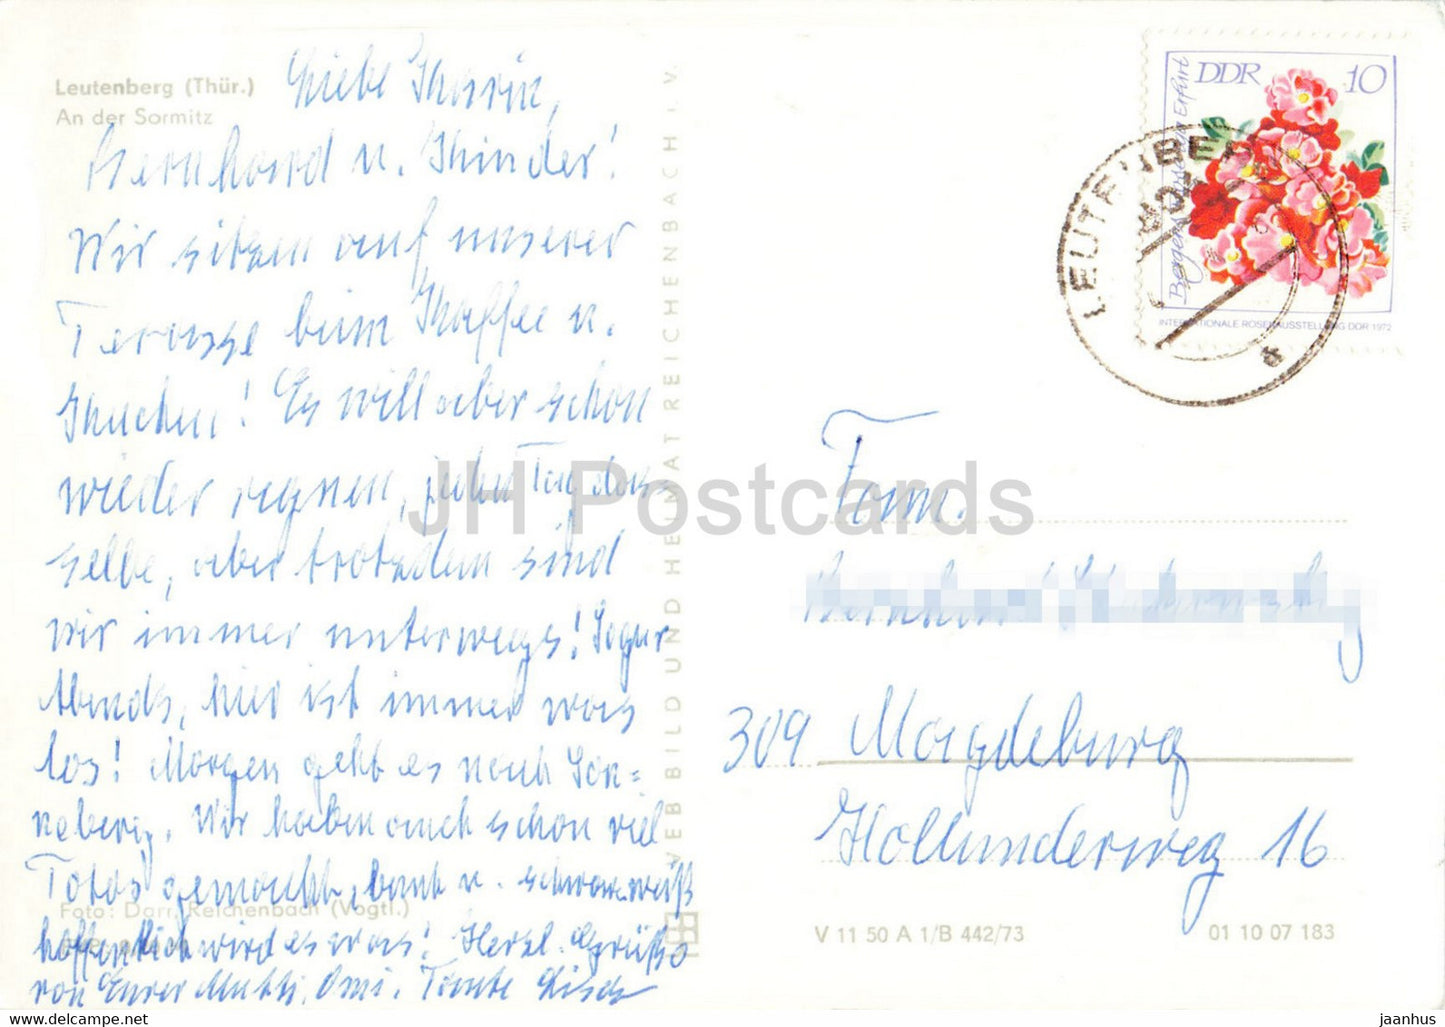 Leutenberg - An der Sormitz - Do - alte Postkarte - 1974 - Deutschland DDR - gebraucht